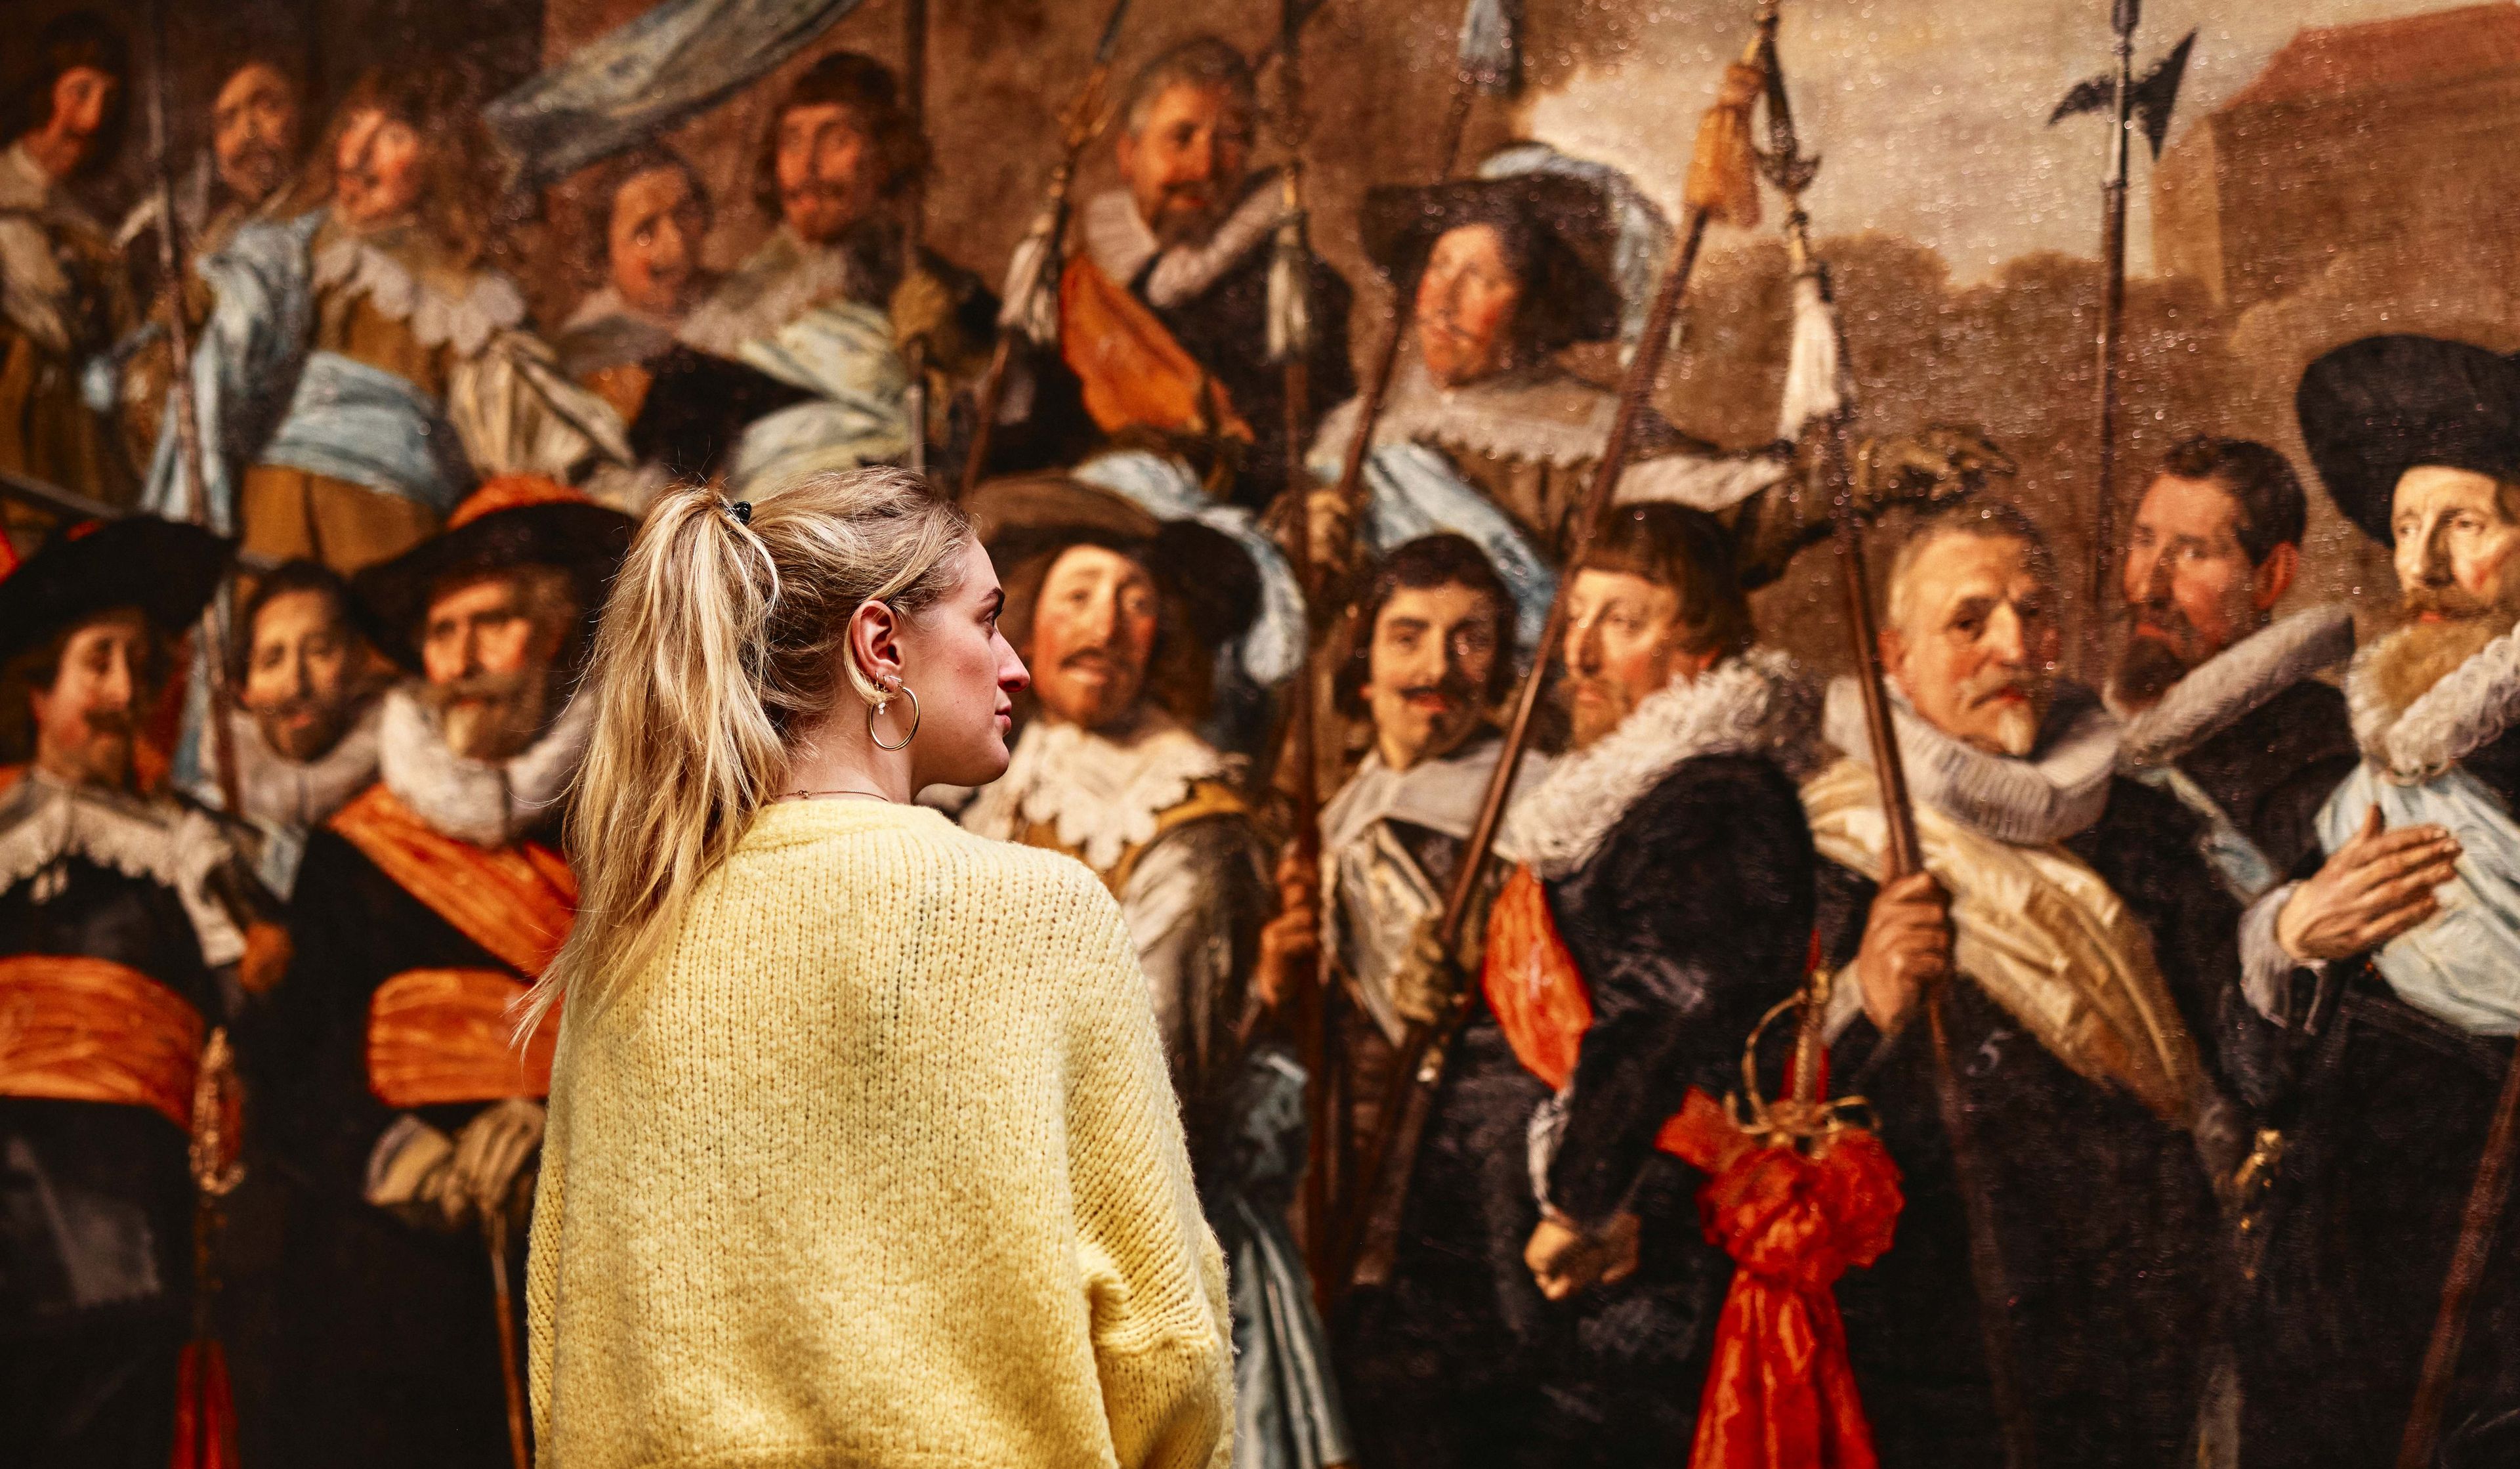 Vrouwelijke bezoeker bekijkt schuttersstuk van Frans Hals.